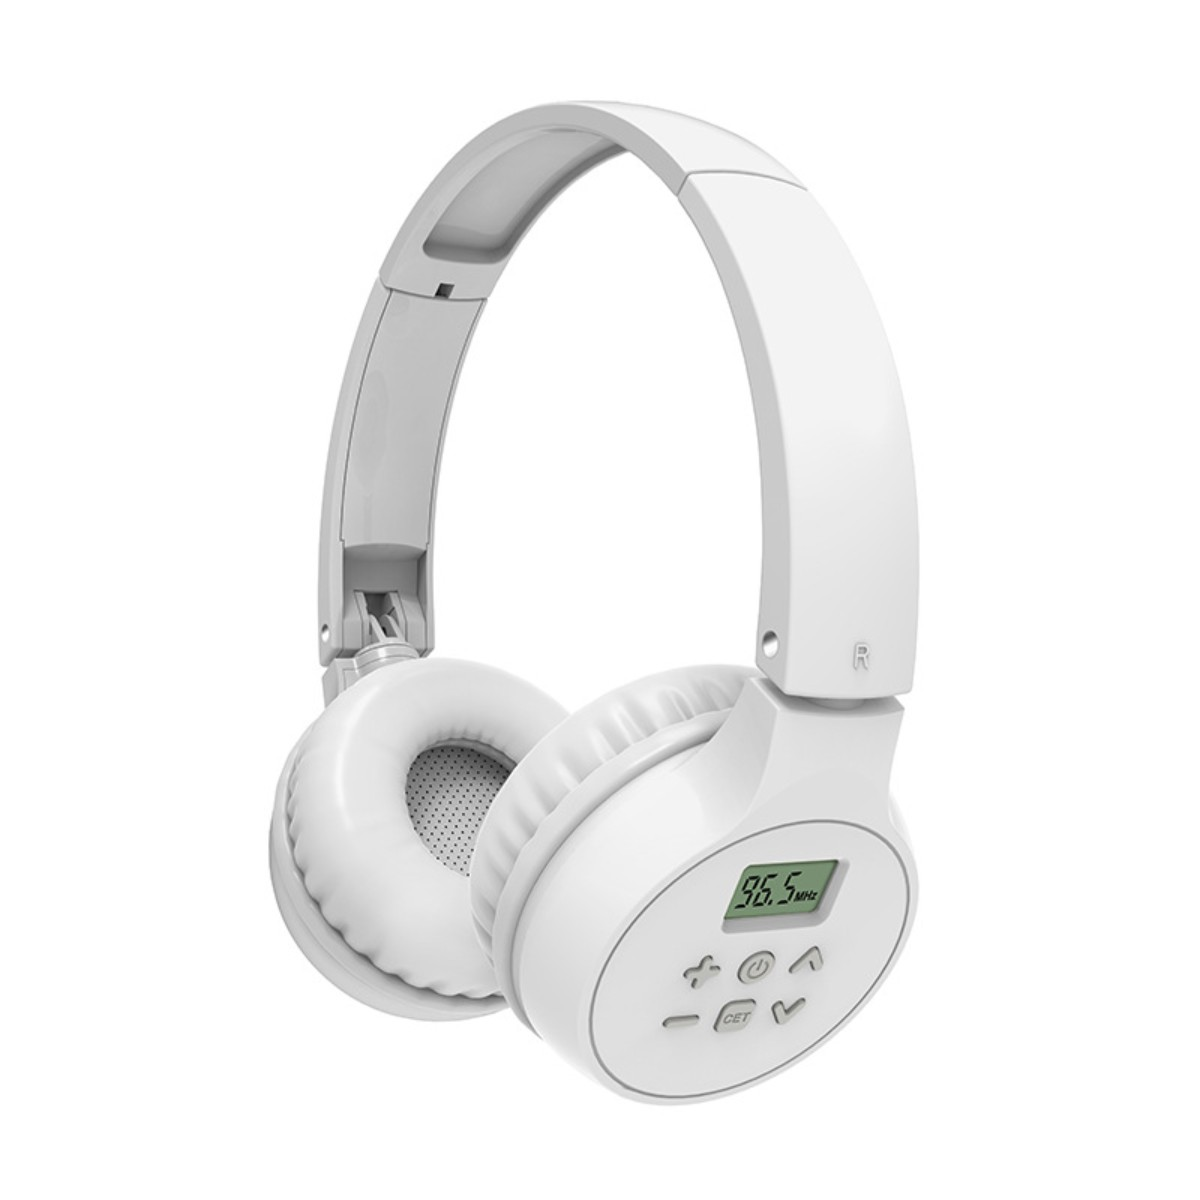 SYNTEK Kopfhörer Weiß 4-6 Weiß 4 Englisch Hören Kopfhörer FM Kopfhörer, Over-ear Wireless Klasse Kopfhörer